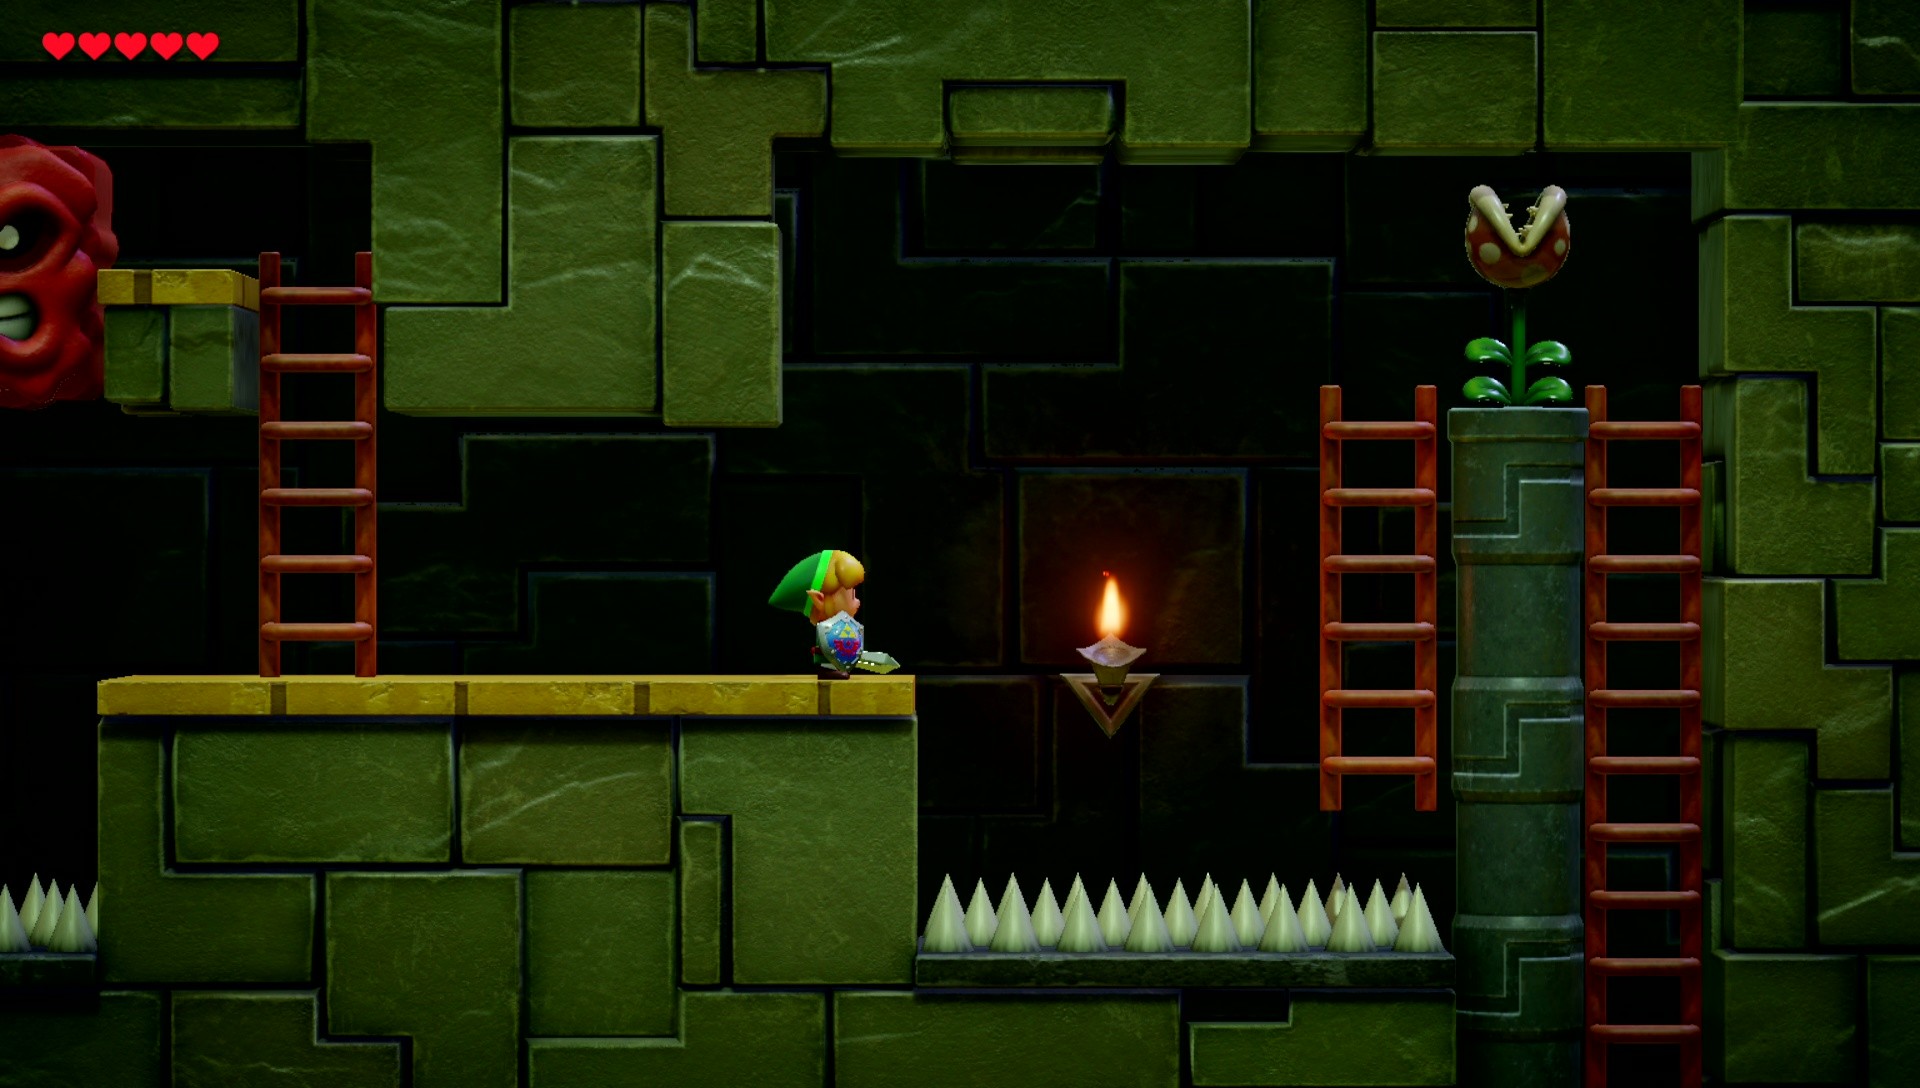 The Legend of Zelda: Link's Awakening Review (Nintendo Switch